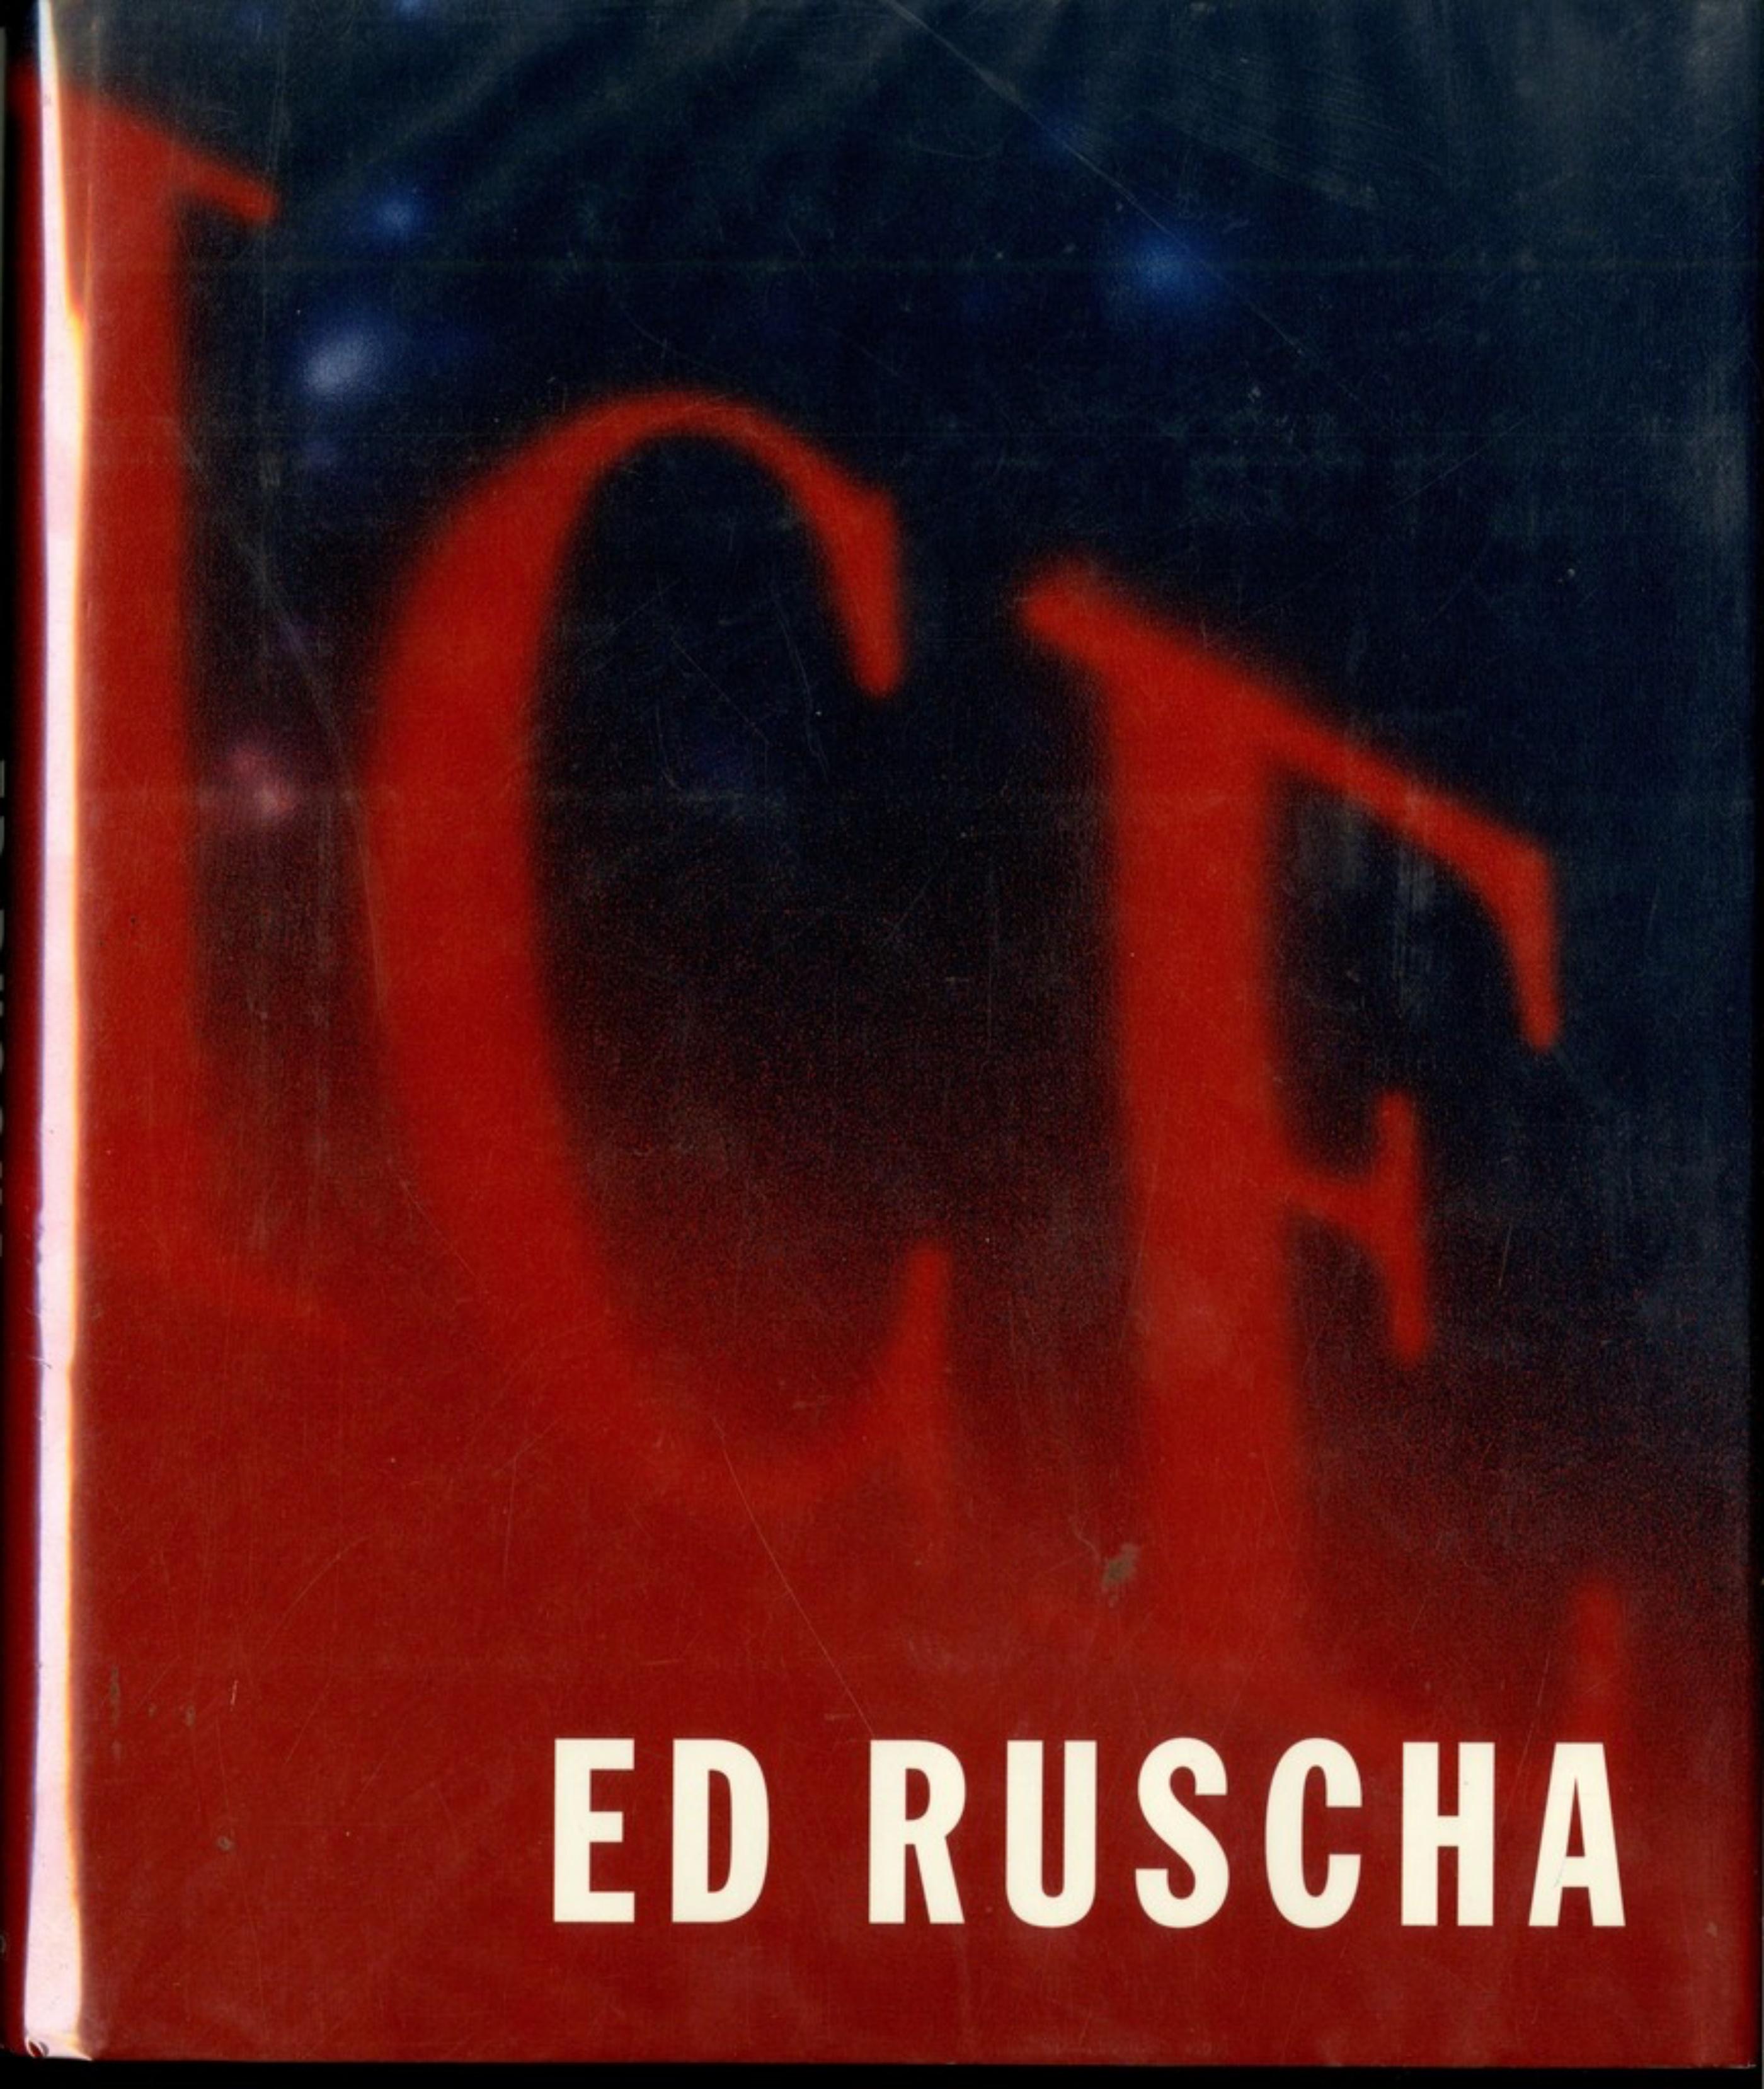 Monographie à dos rigide : signée et inscrite à la main  ex-propriétaire de la 20th Century Fox - Print de Ed Ruscha